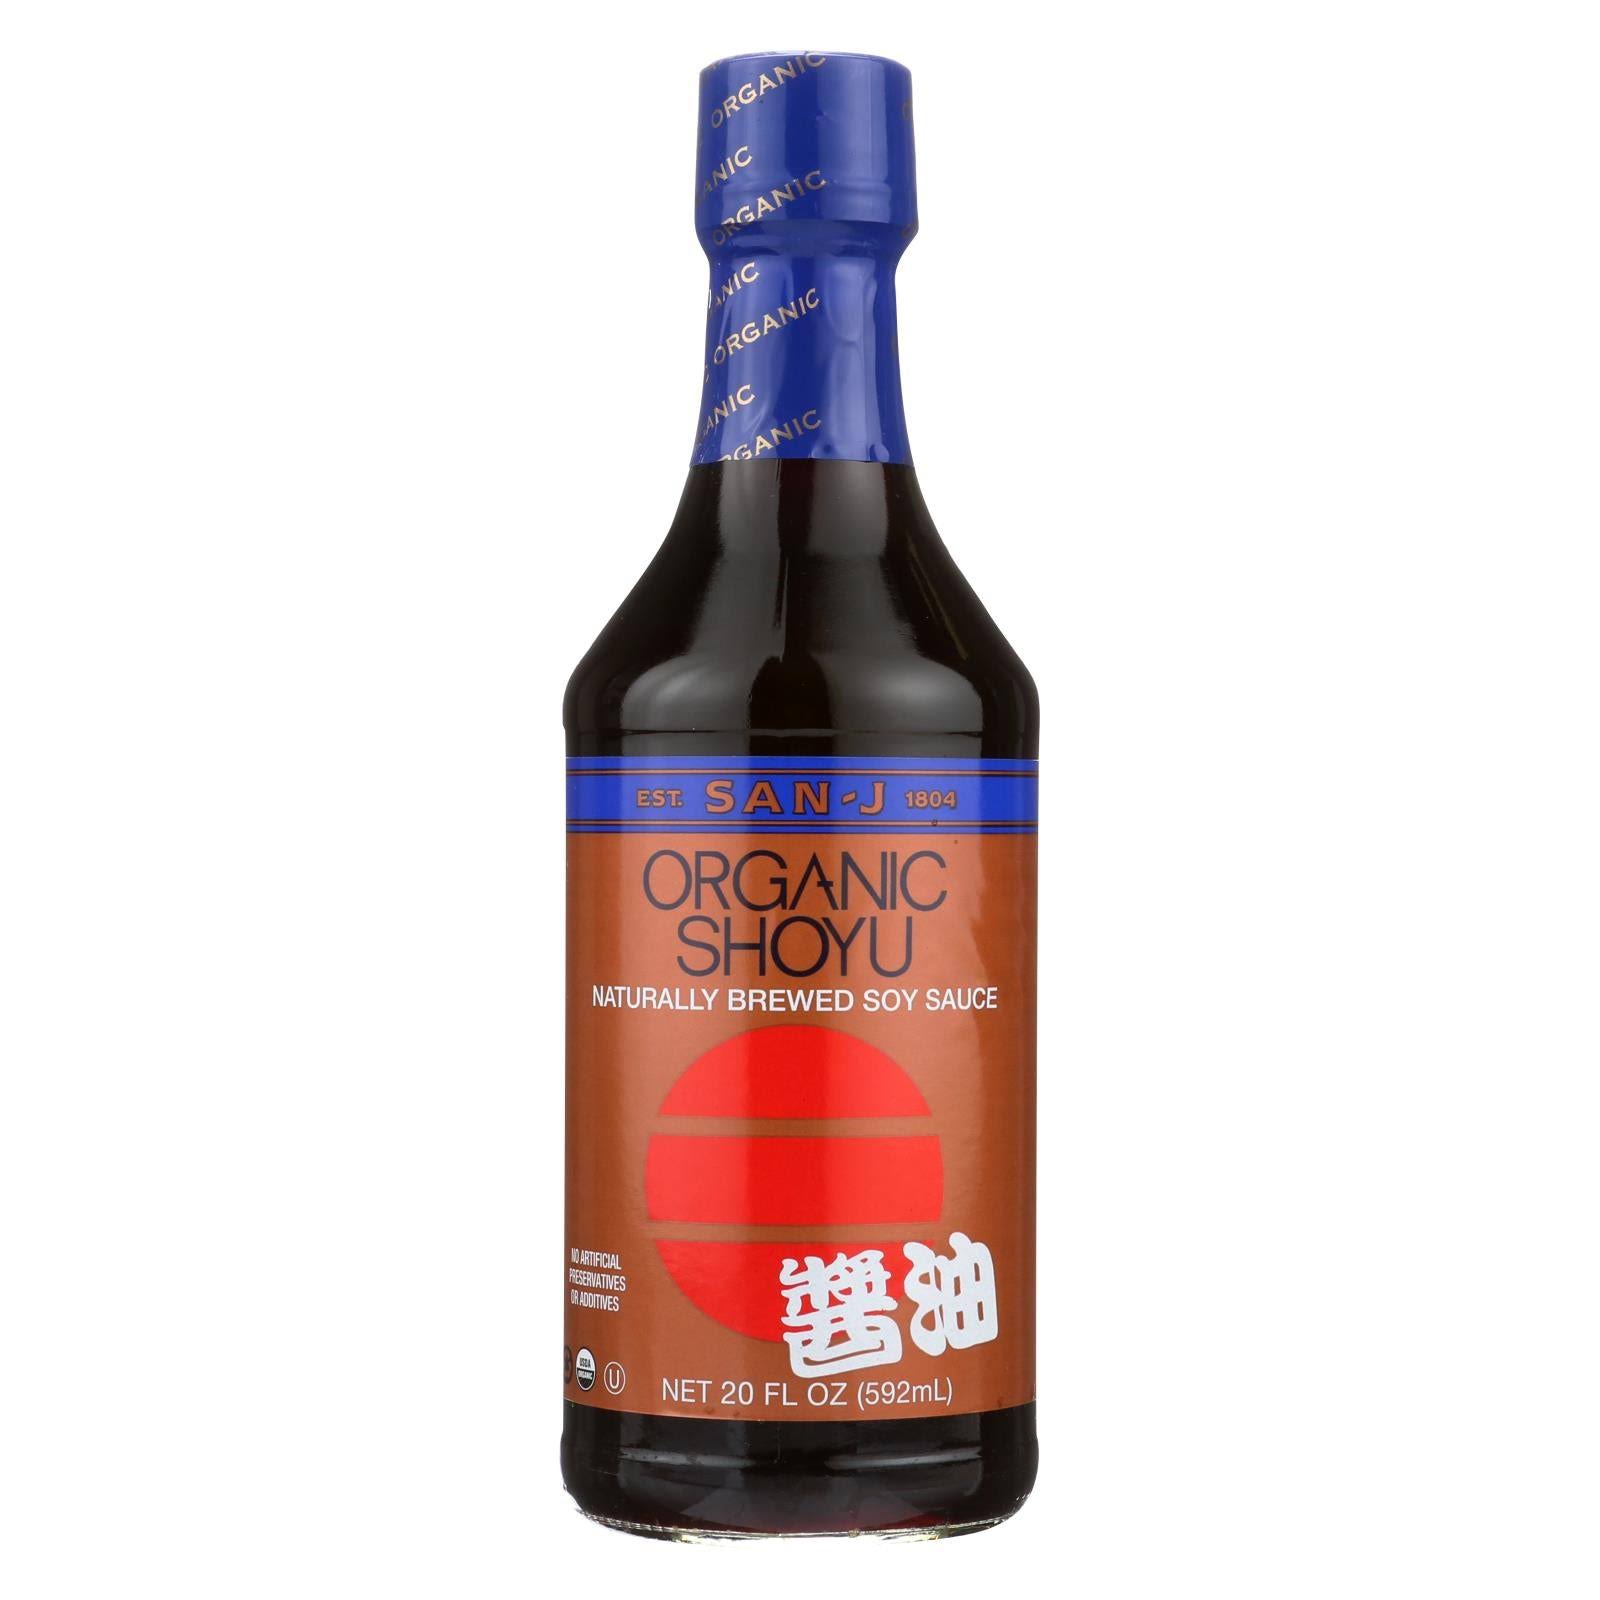 San J Organic Shoyu Sauce Soy - 20oz, 6 Pack